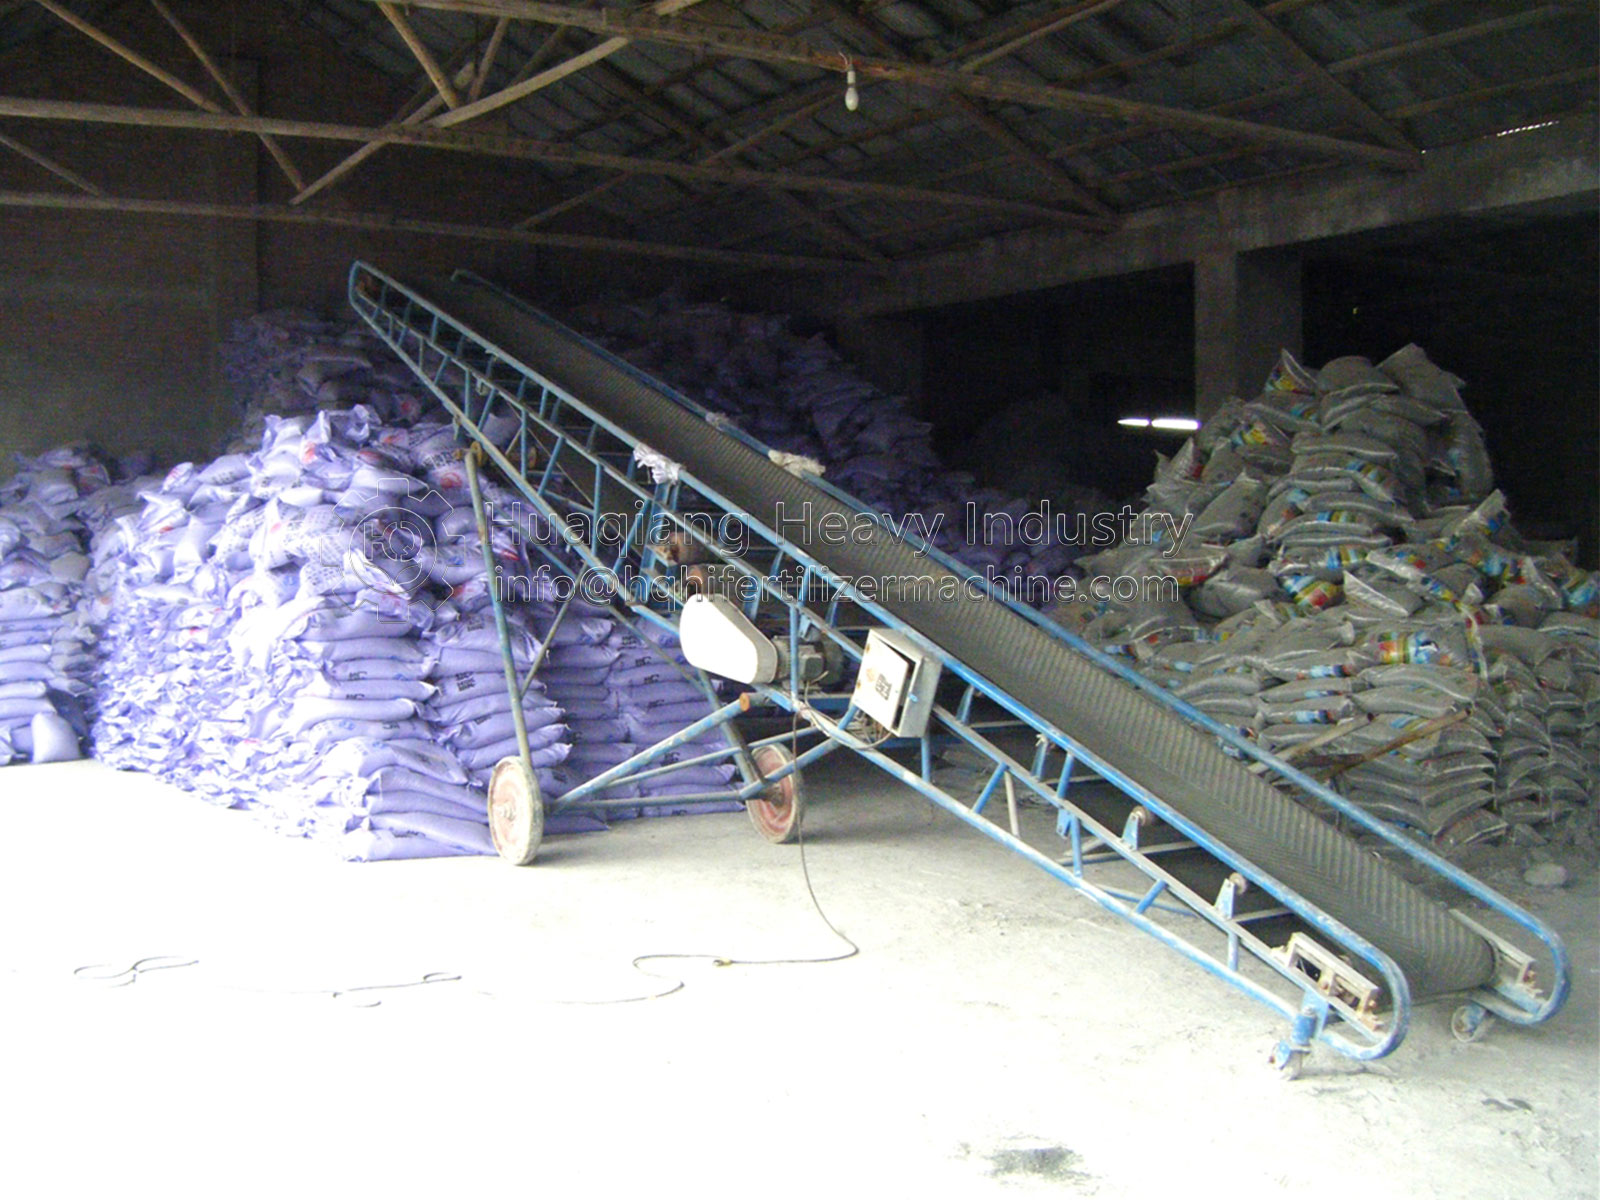 Qatar Organic Fertilizer Powder Production Line Delivery